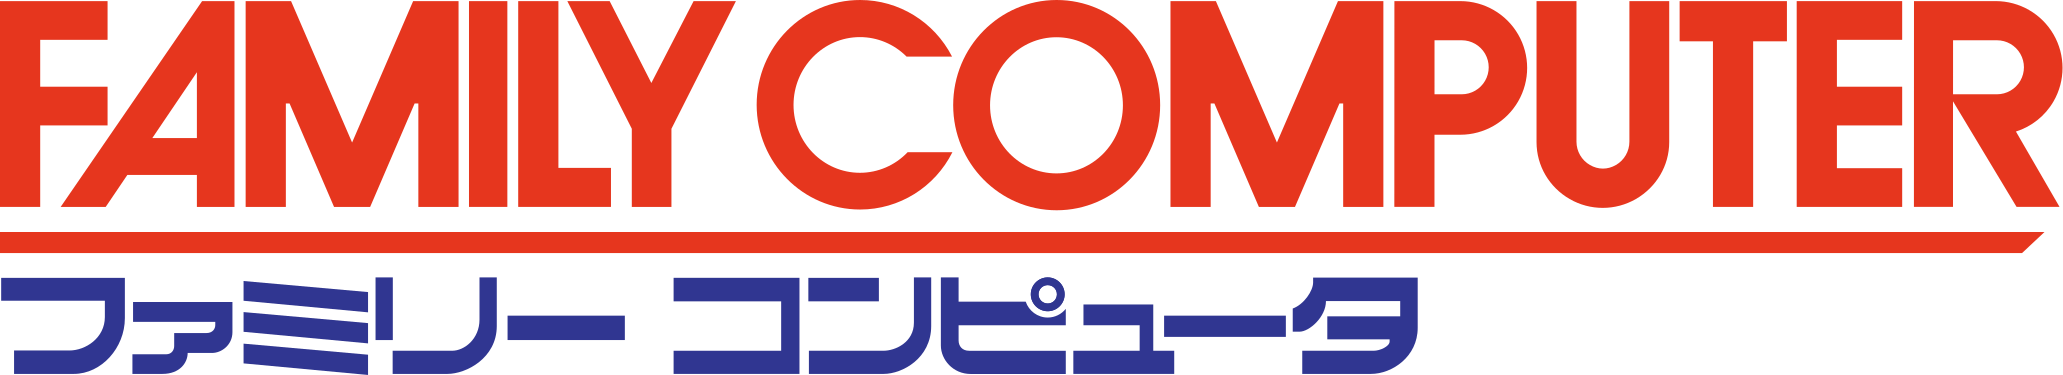 Family Computer (Famicom) logo.